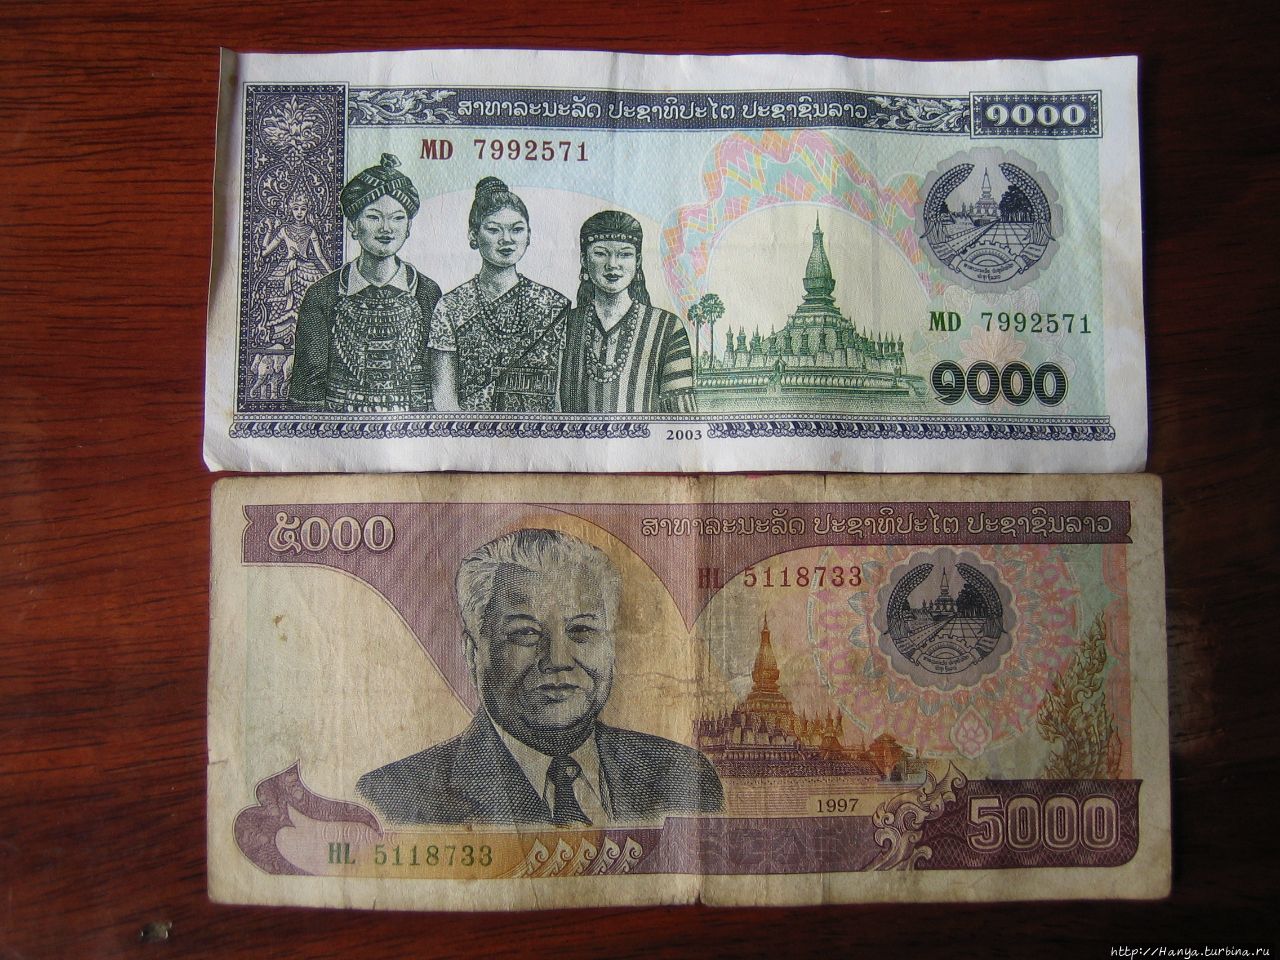 Лаосские деньги